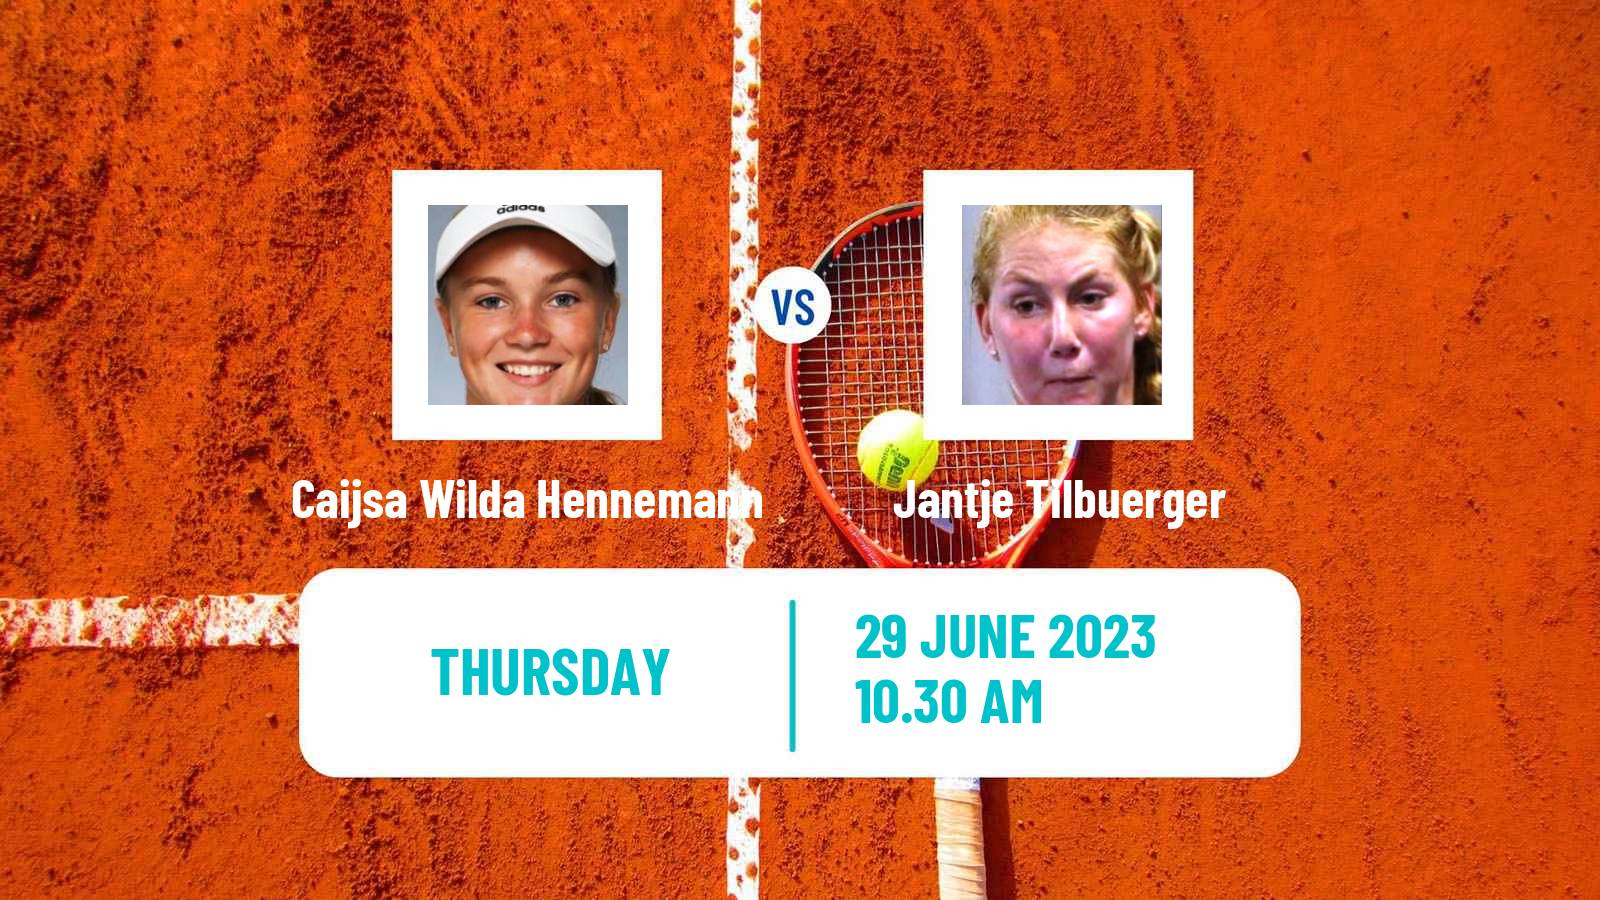 Tennis ITF W15 Alkmaar Women Caijsa Wilda Hennemann - Jantje Tilbuerger